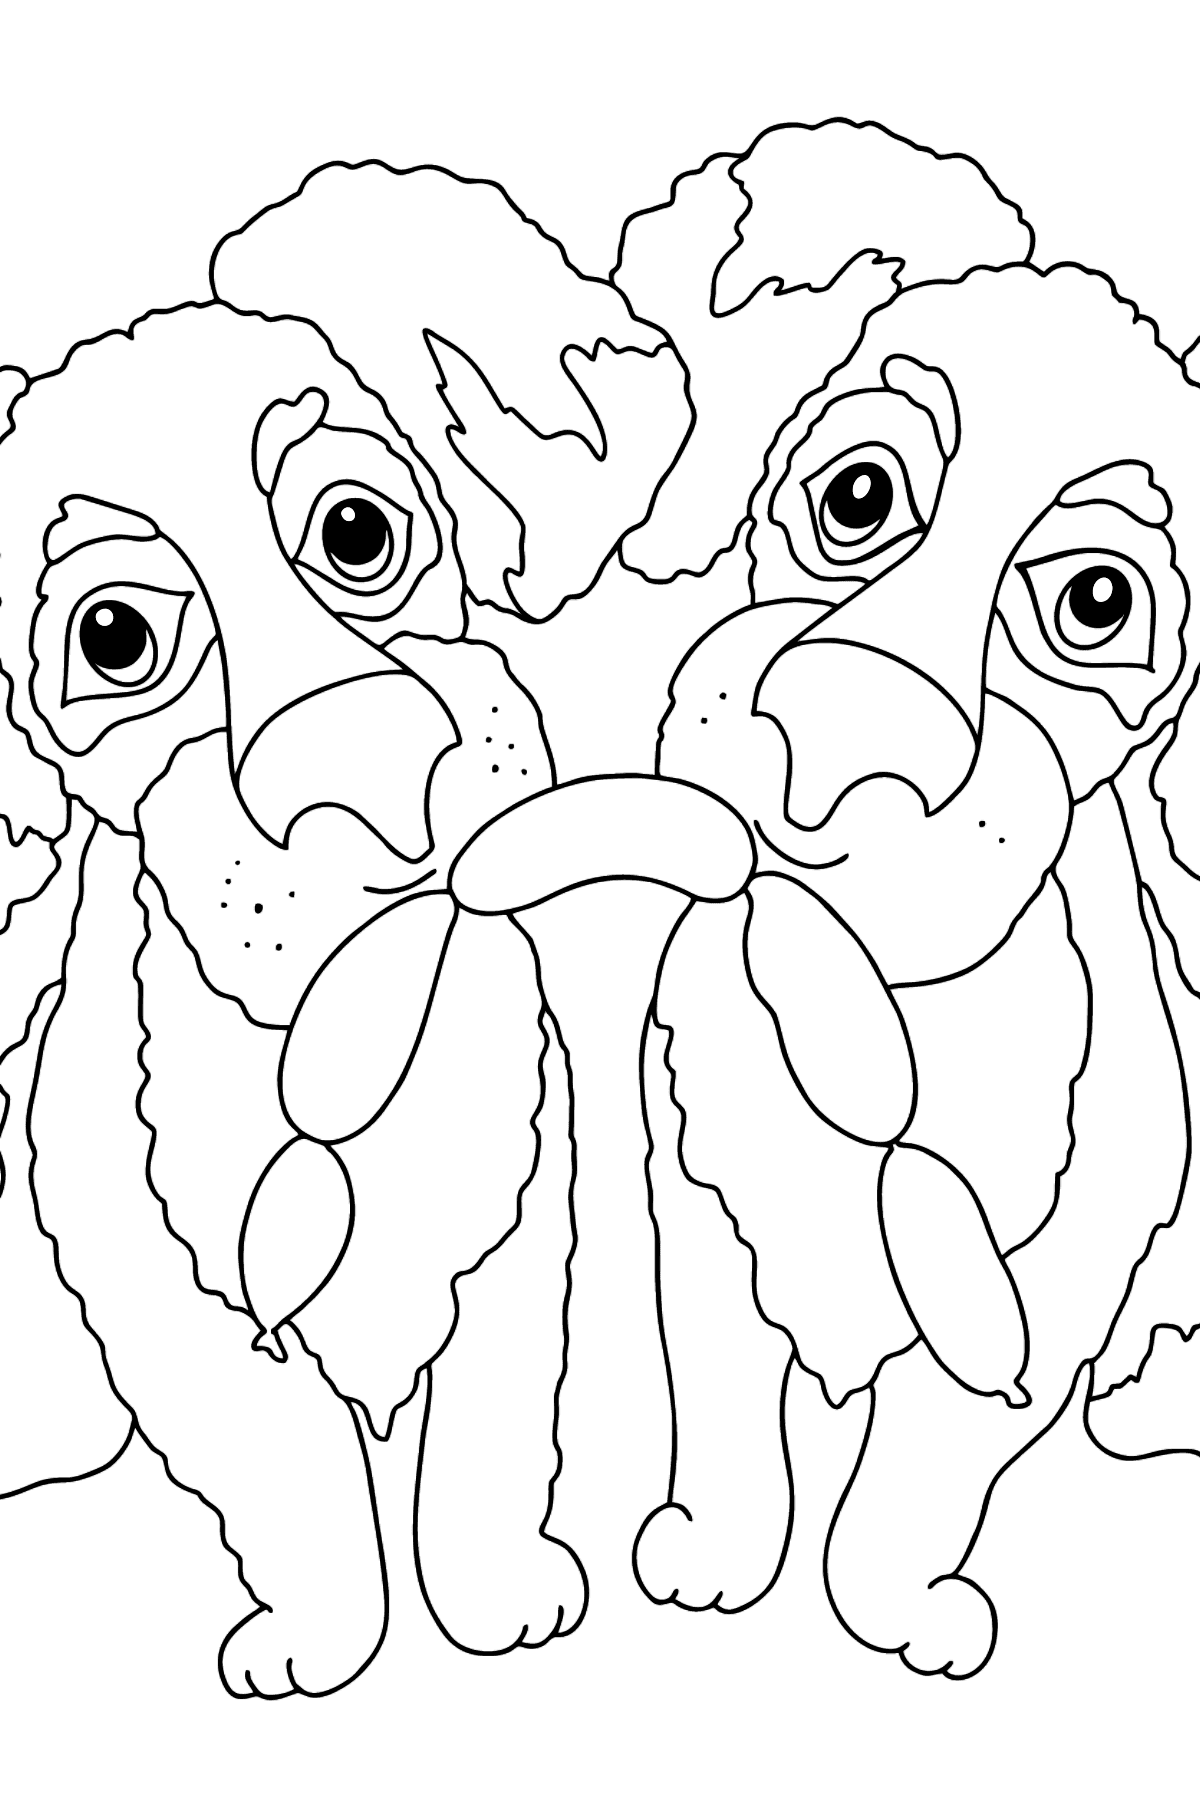 Värityskuva hauskat koirat (vaikea) - Värityskuvat lapsille